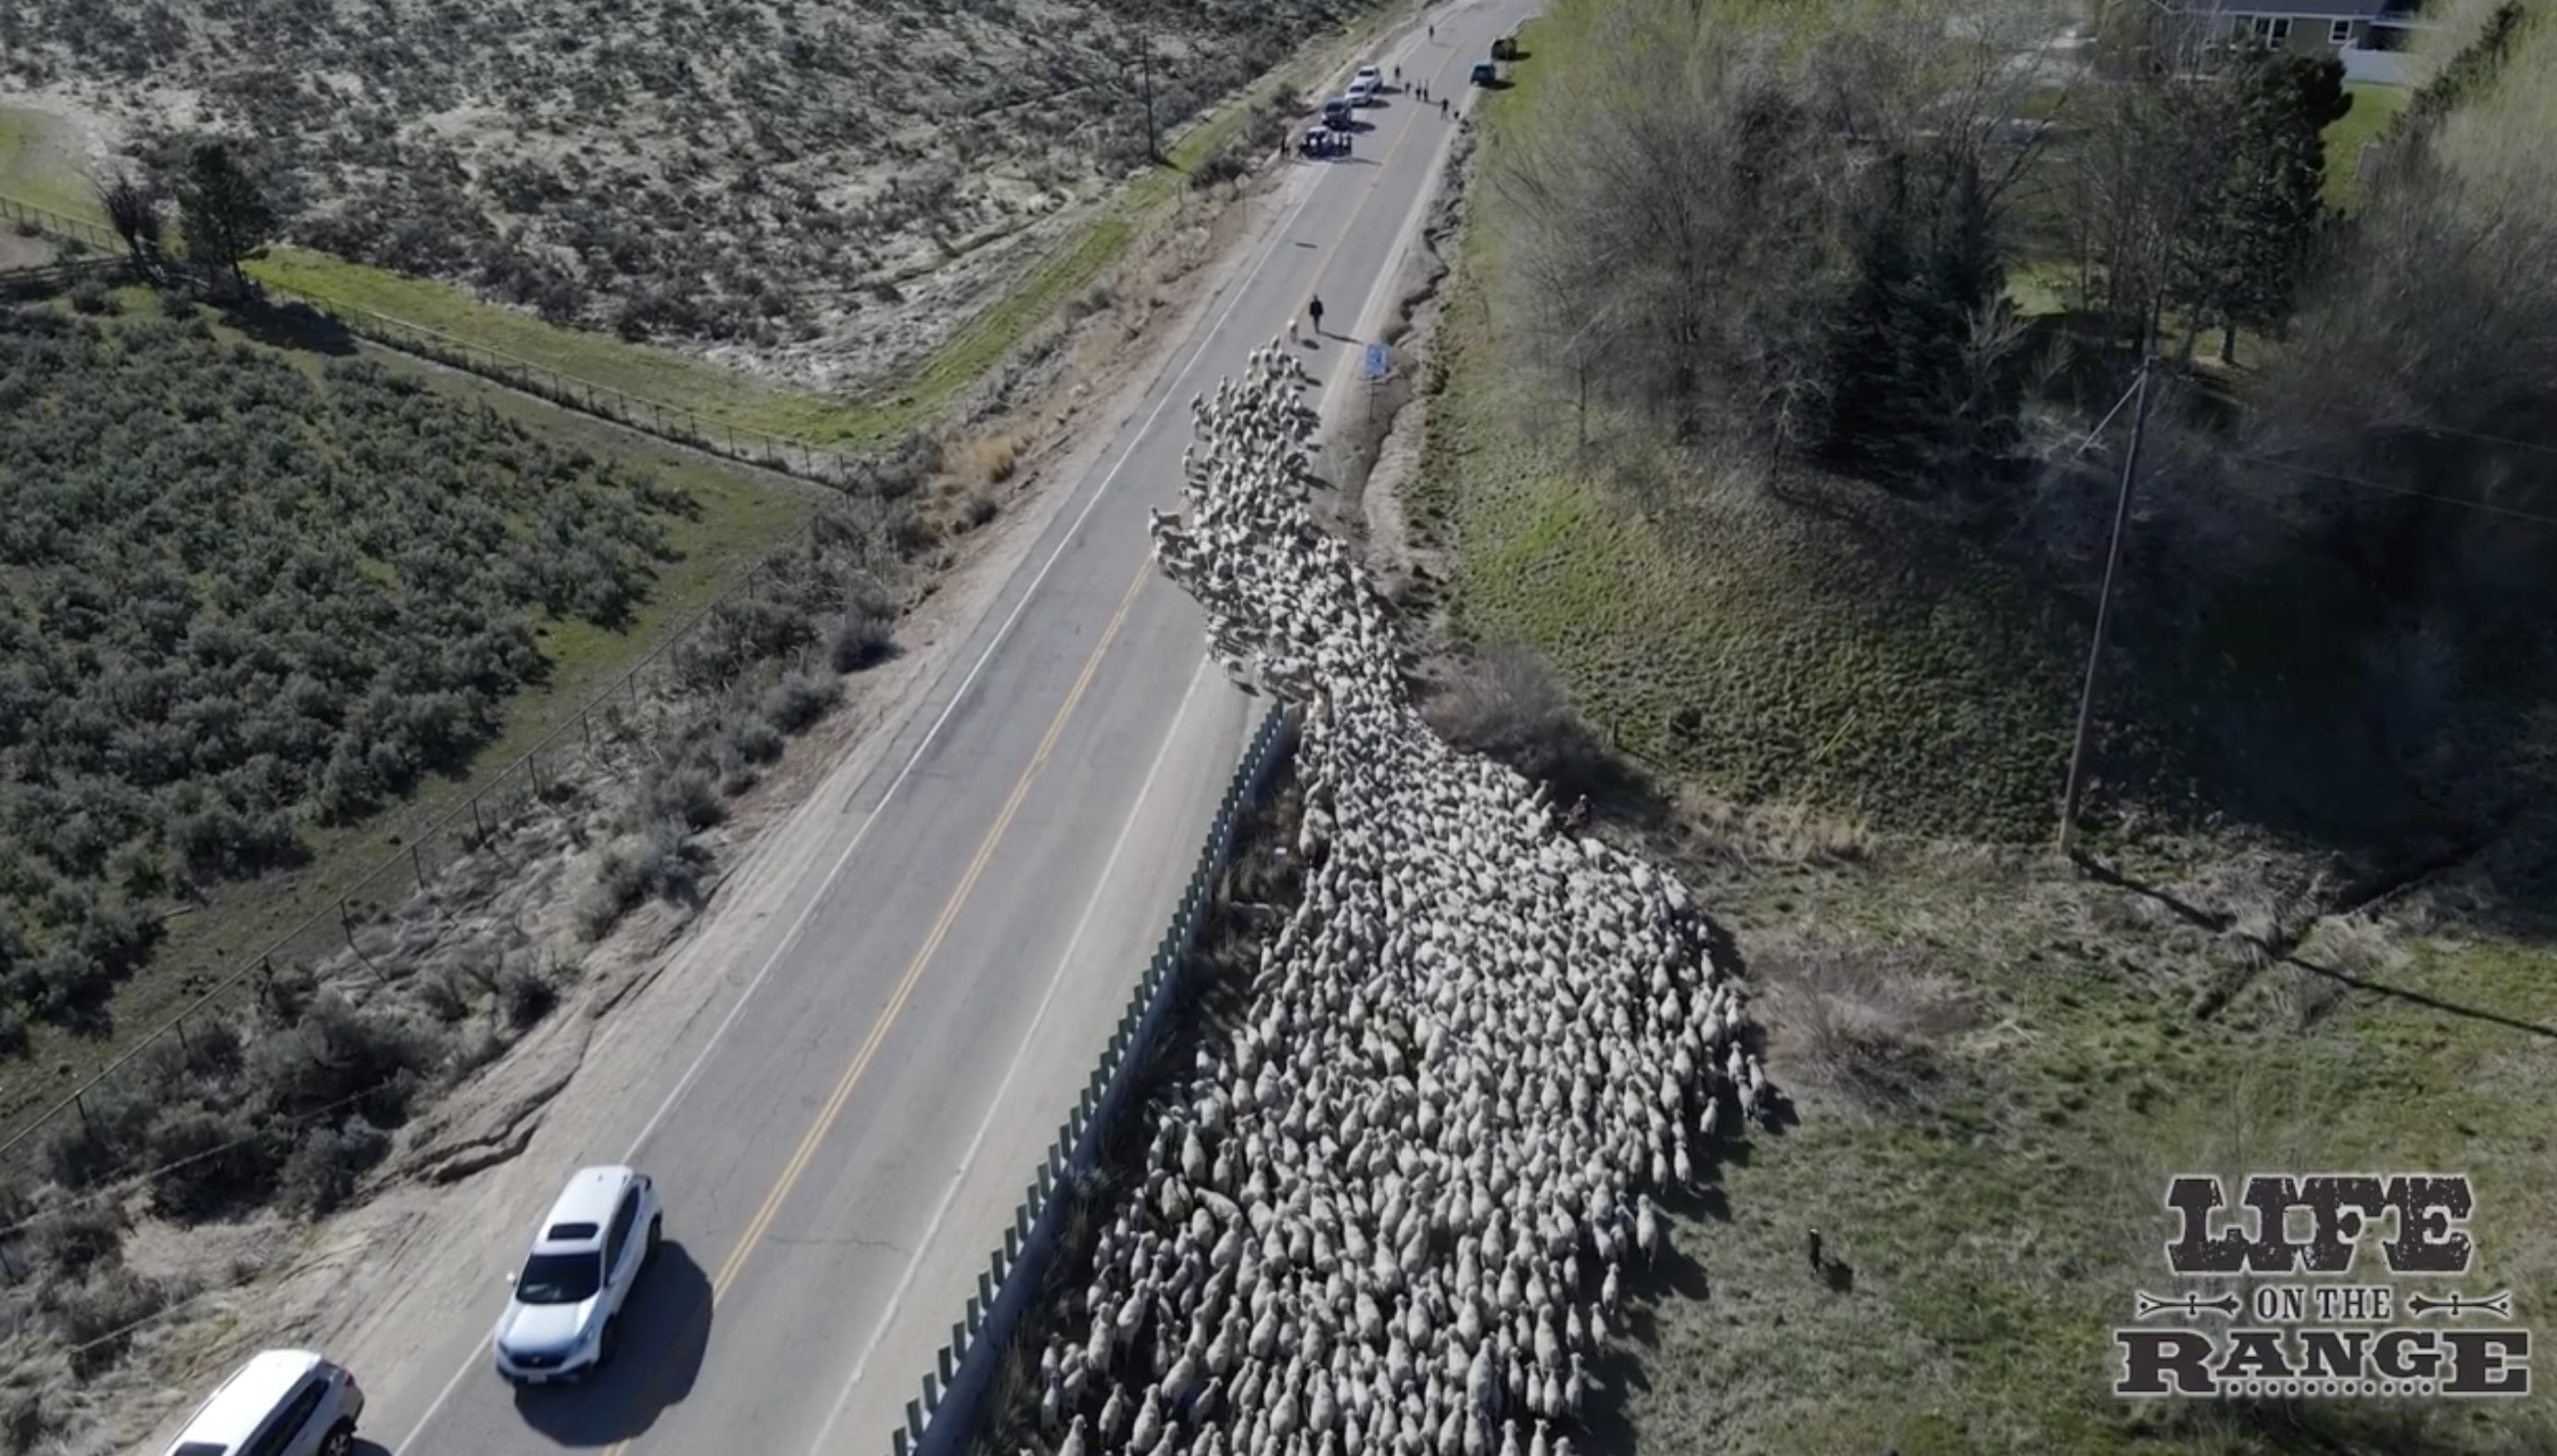 [VIDEO] La orgullosa herencia agrícola de Estados Unidos: la gente se emocionó al ver más de 2500 ovejas corriendo por la carretera más grande de Idaho